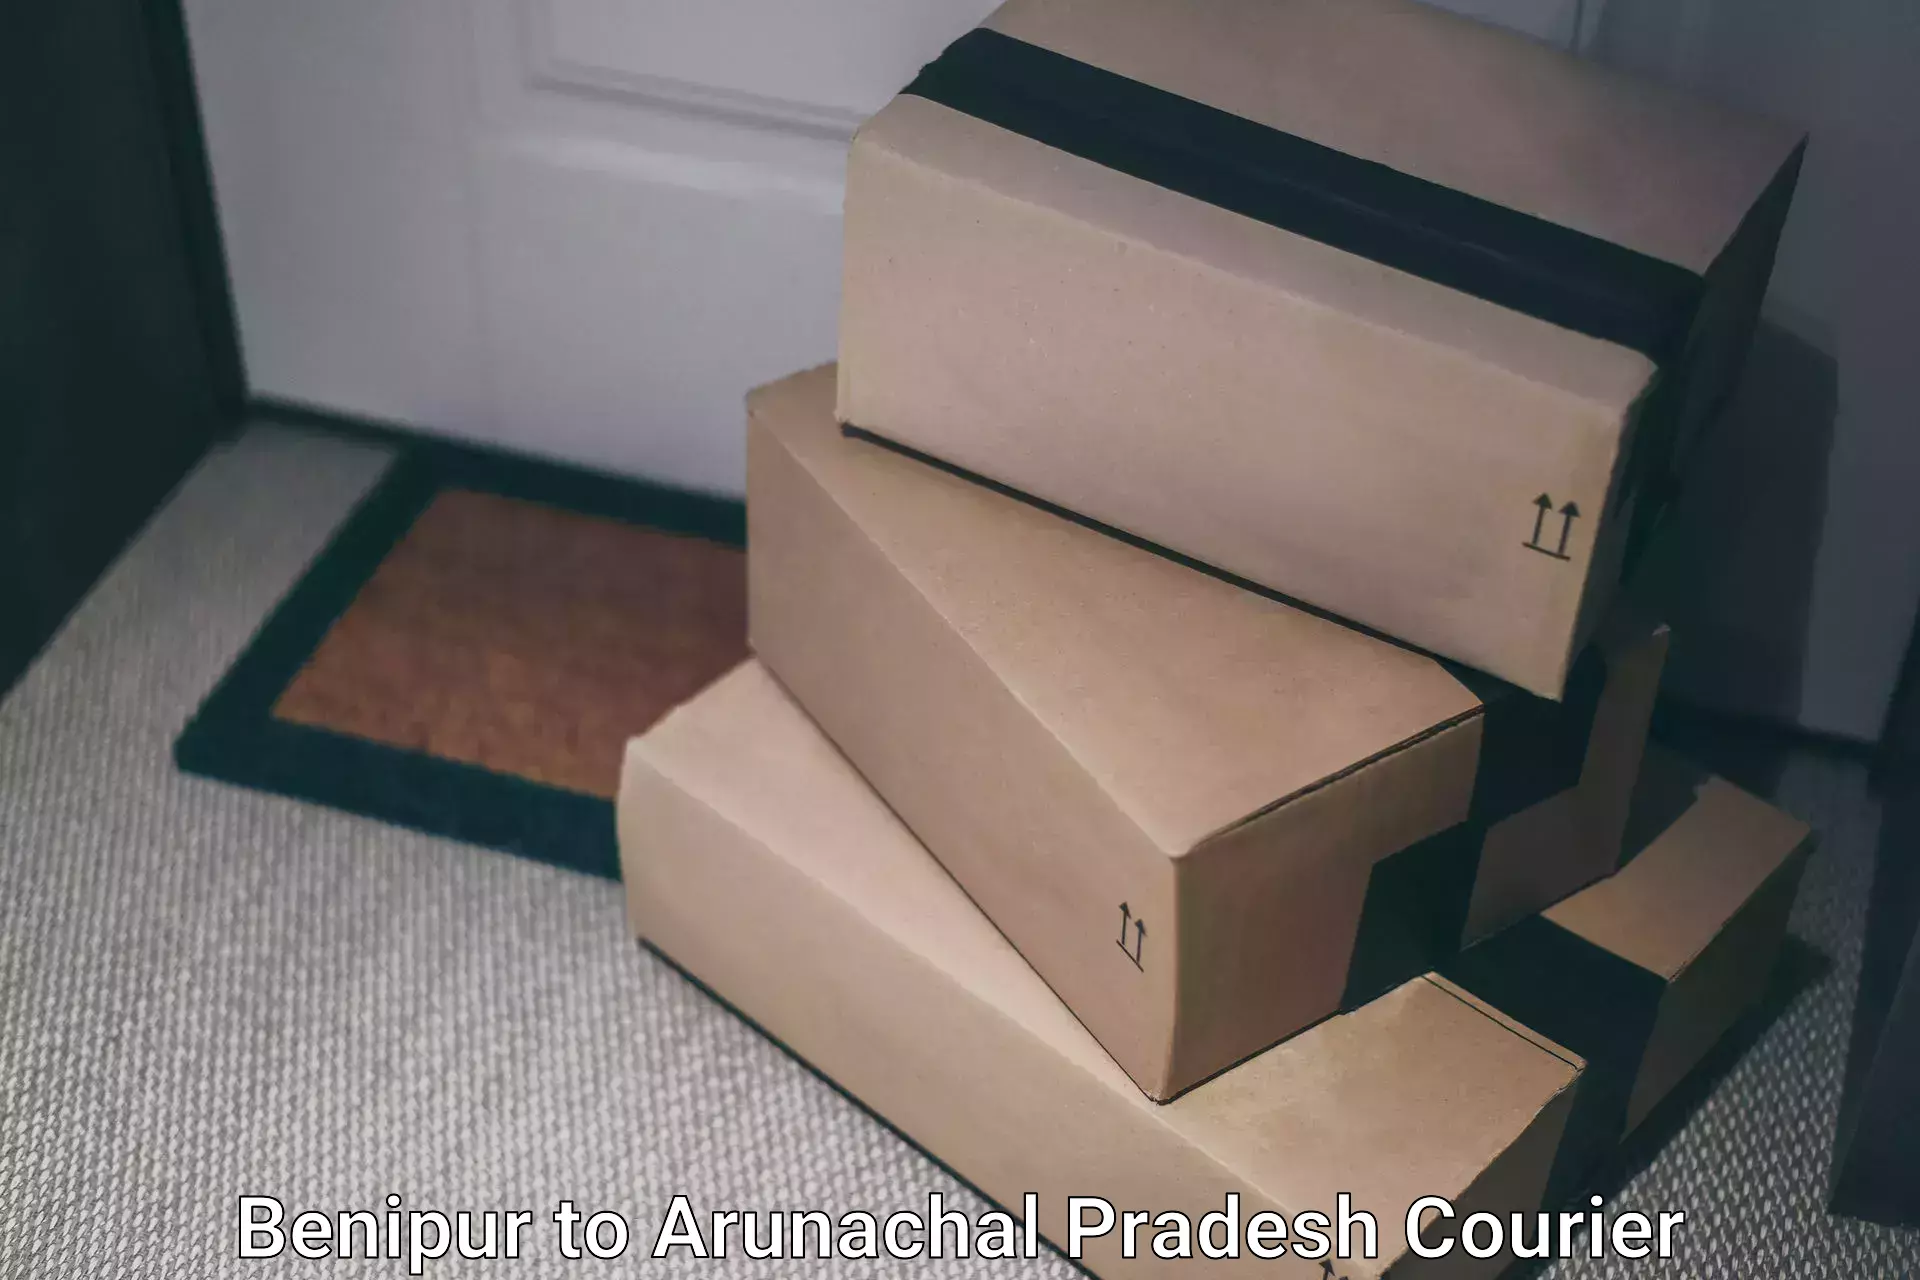 Flexible delivery schedules Benipur to Arunachal Pradesh